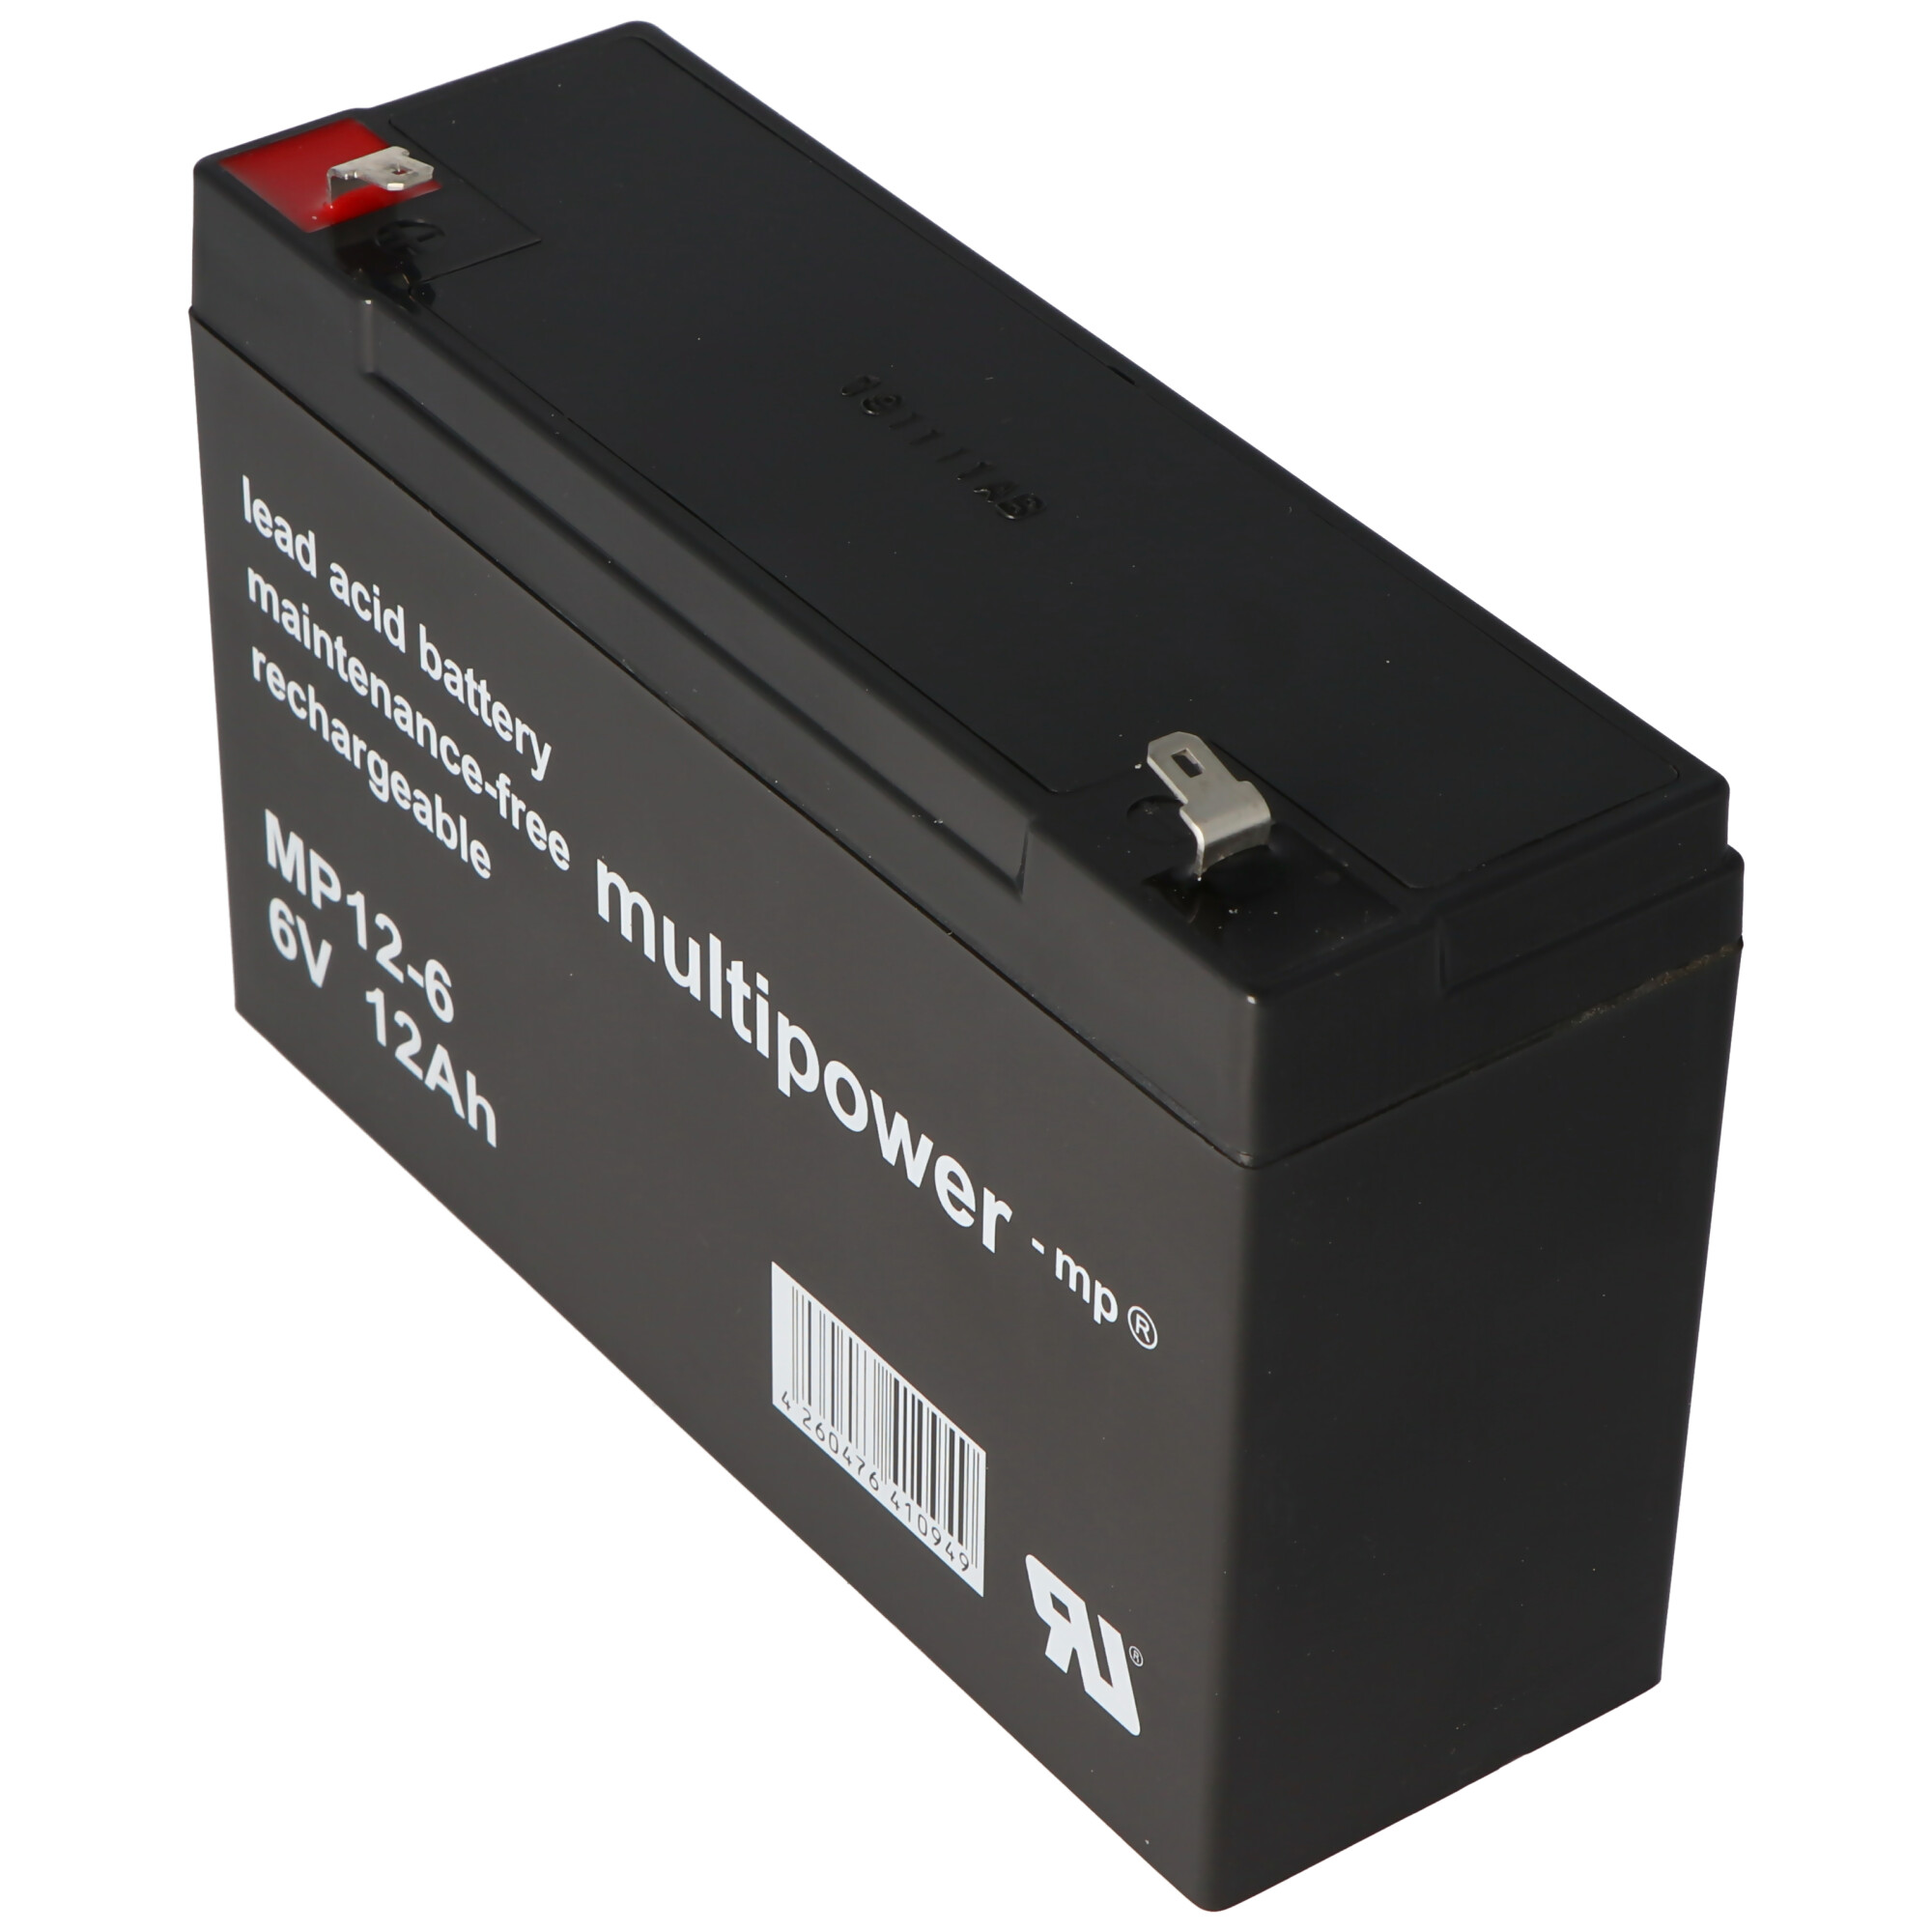 Batterie au plomb Multipower MP12-6 avec connecteur Faston de 4,8 mm 6V,  12Ah, 12 Volt, Multipower, Batterie au plomb Gel AGM, Batteries